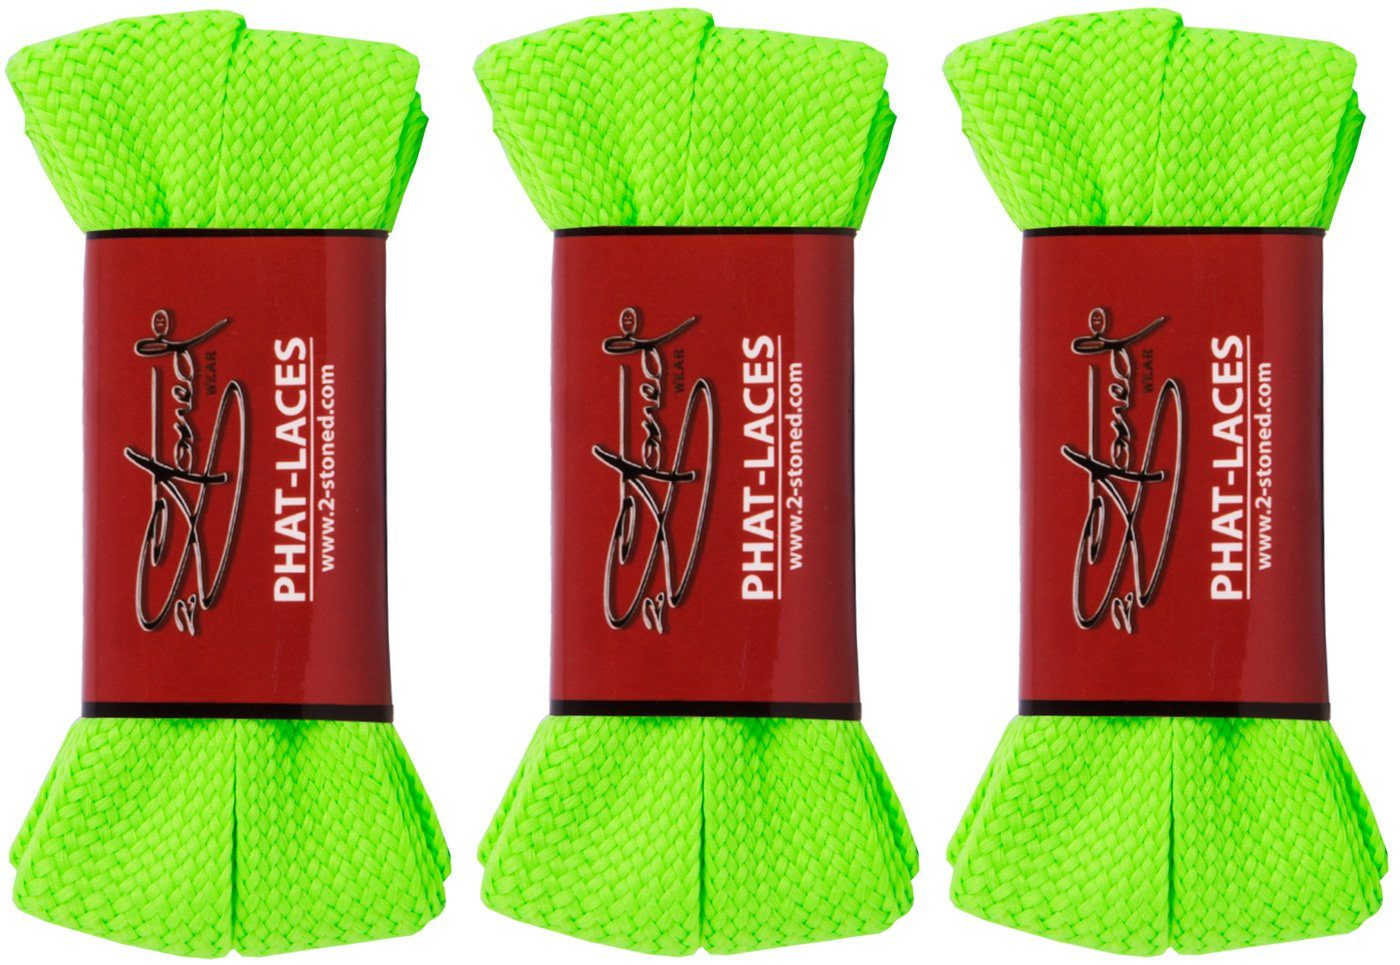 2Stoned Schnürsenkel Bundle Phat Laces 120 cm lang und 3 cm breit, 3 Paar, extrabreit für Sneaker und Turnschuhe Neongrün